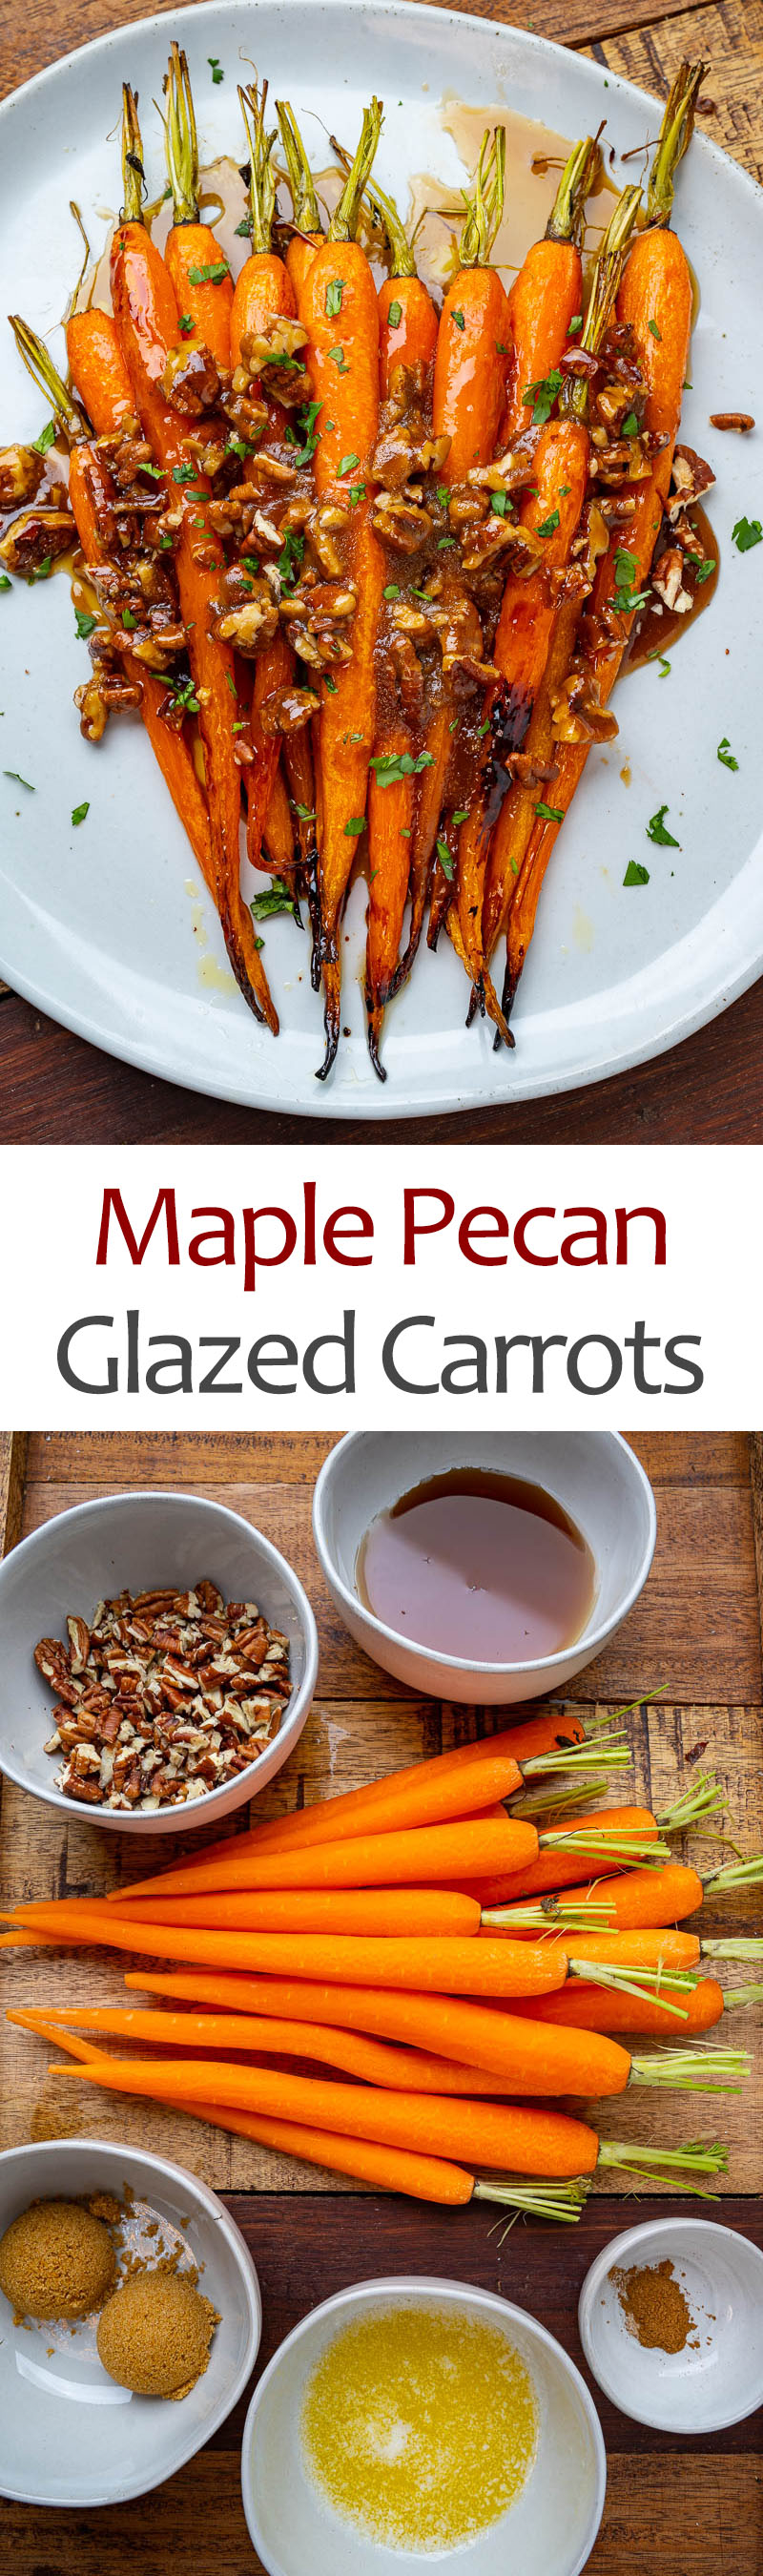 Maple Pecan Glazed Carrots